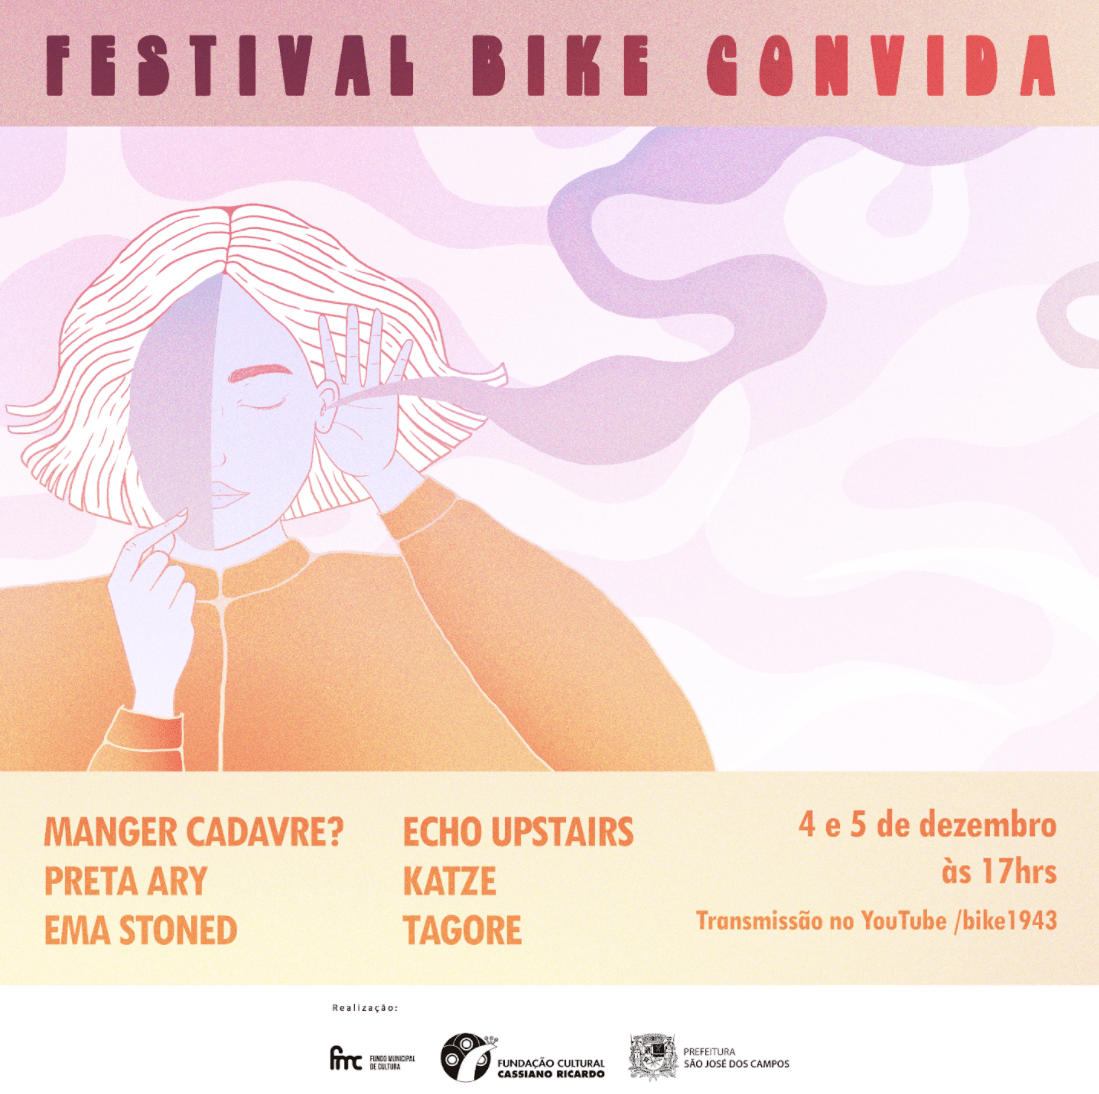 Festival Bike Convida acontece em dezembro - single além-ambiente